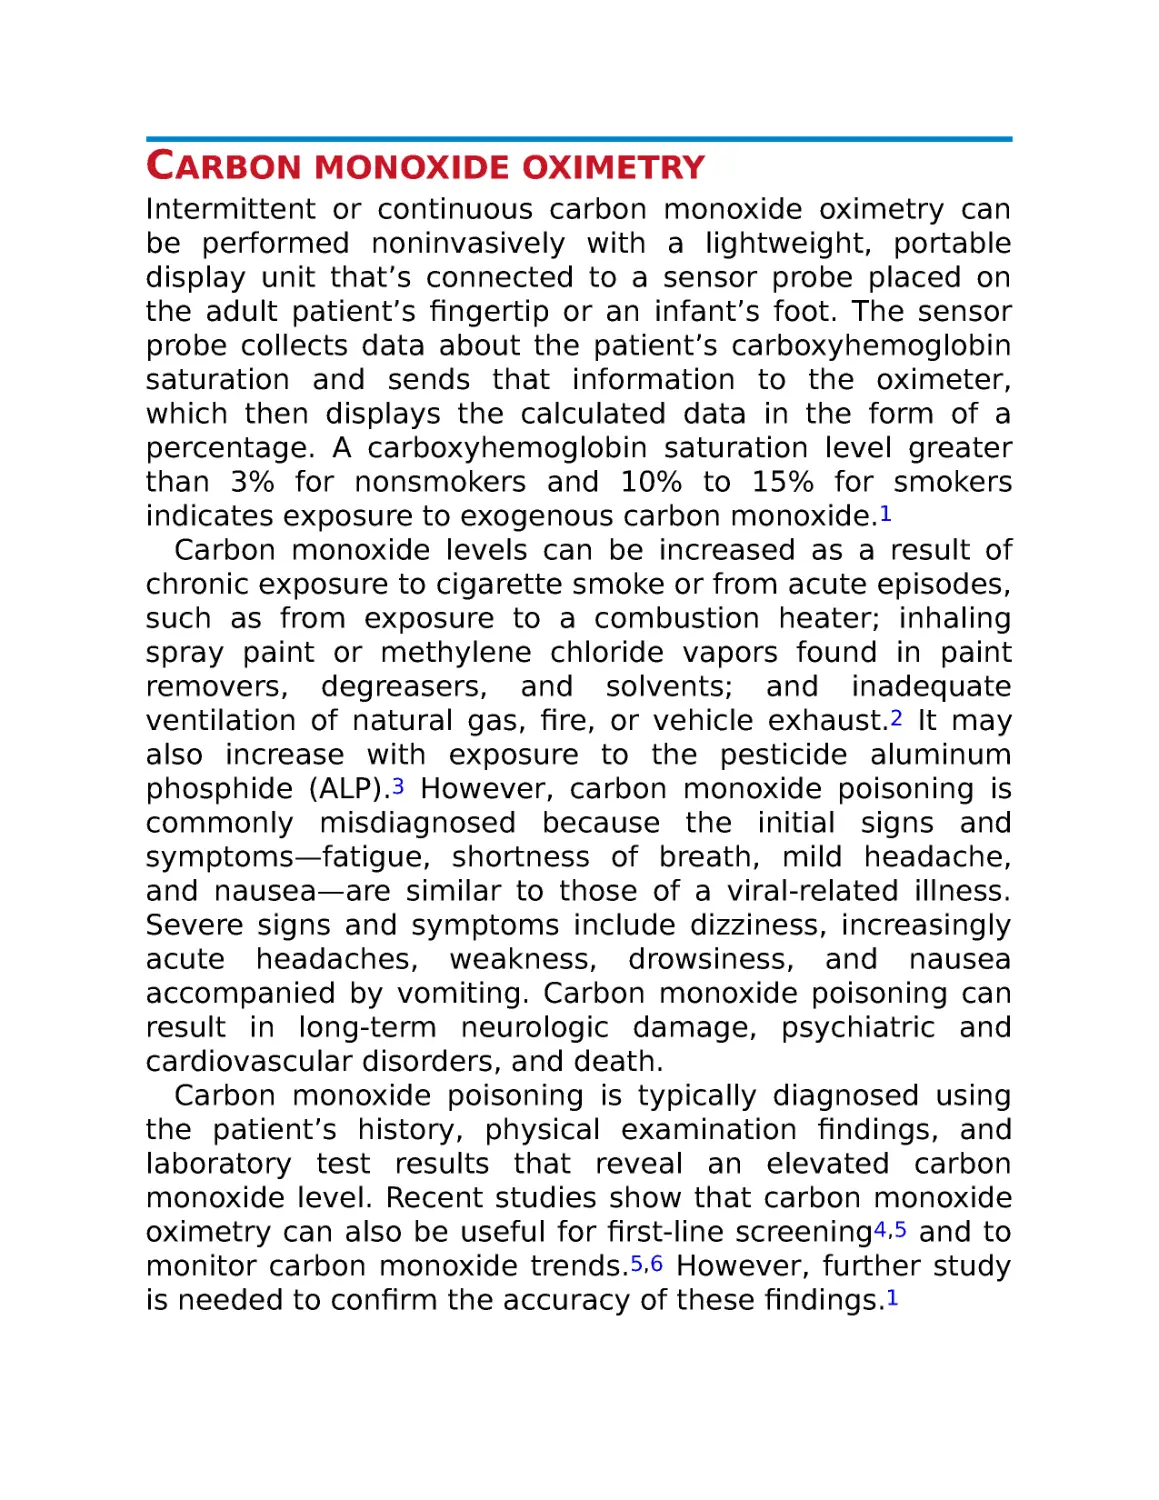 Carbon monoxide oximetry